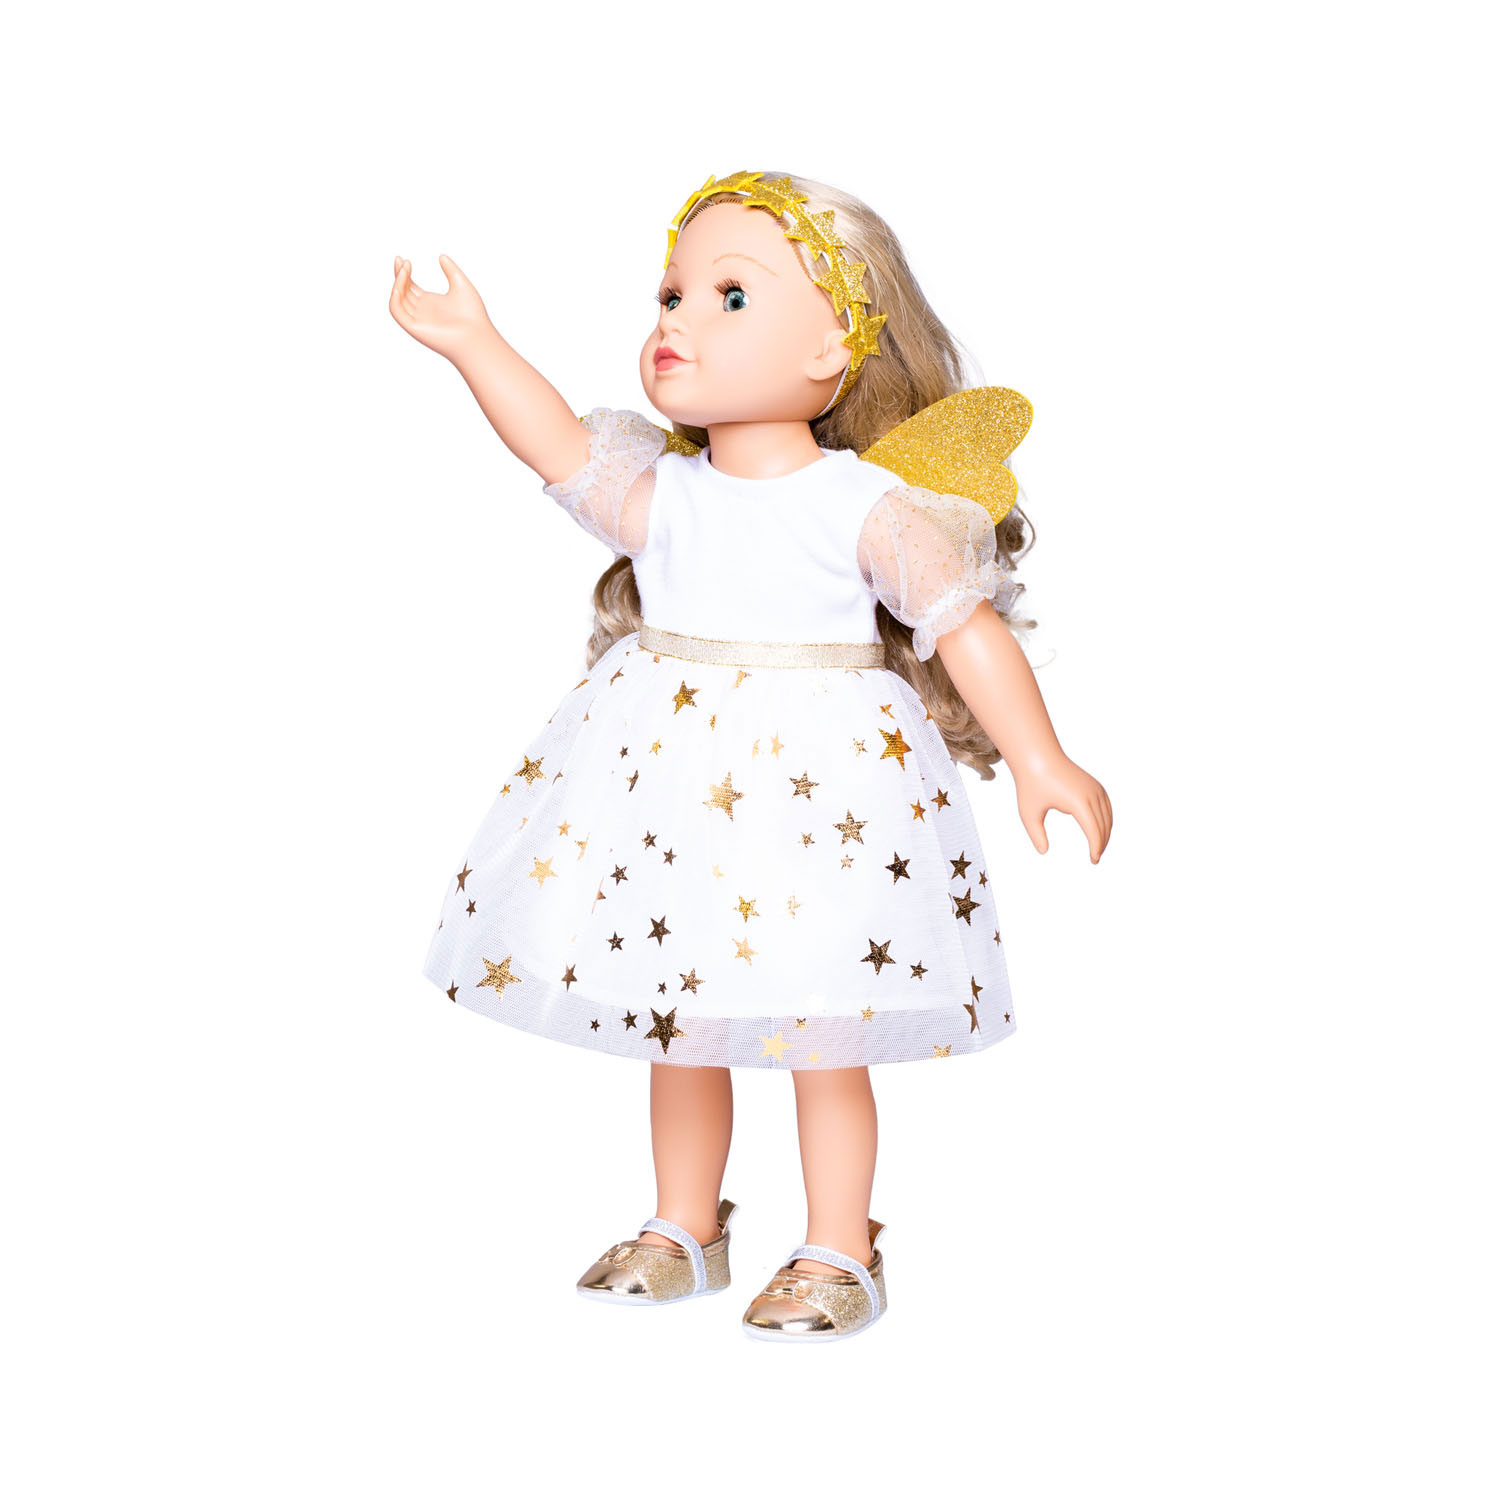 Robe de poupée Ange avec étoiles, 28-35 cm